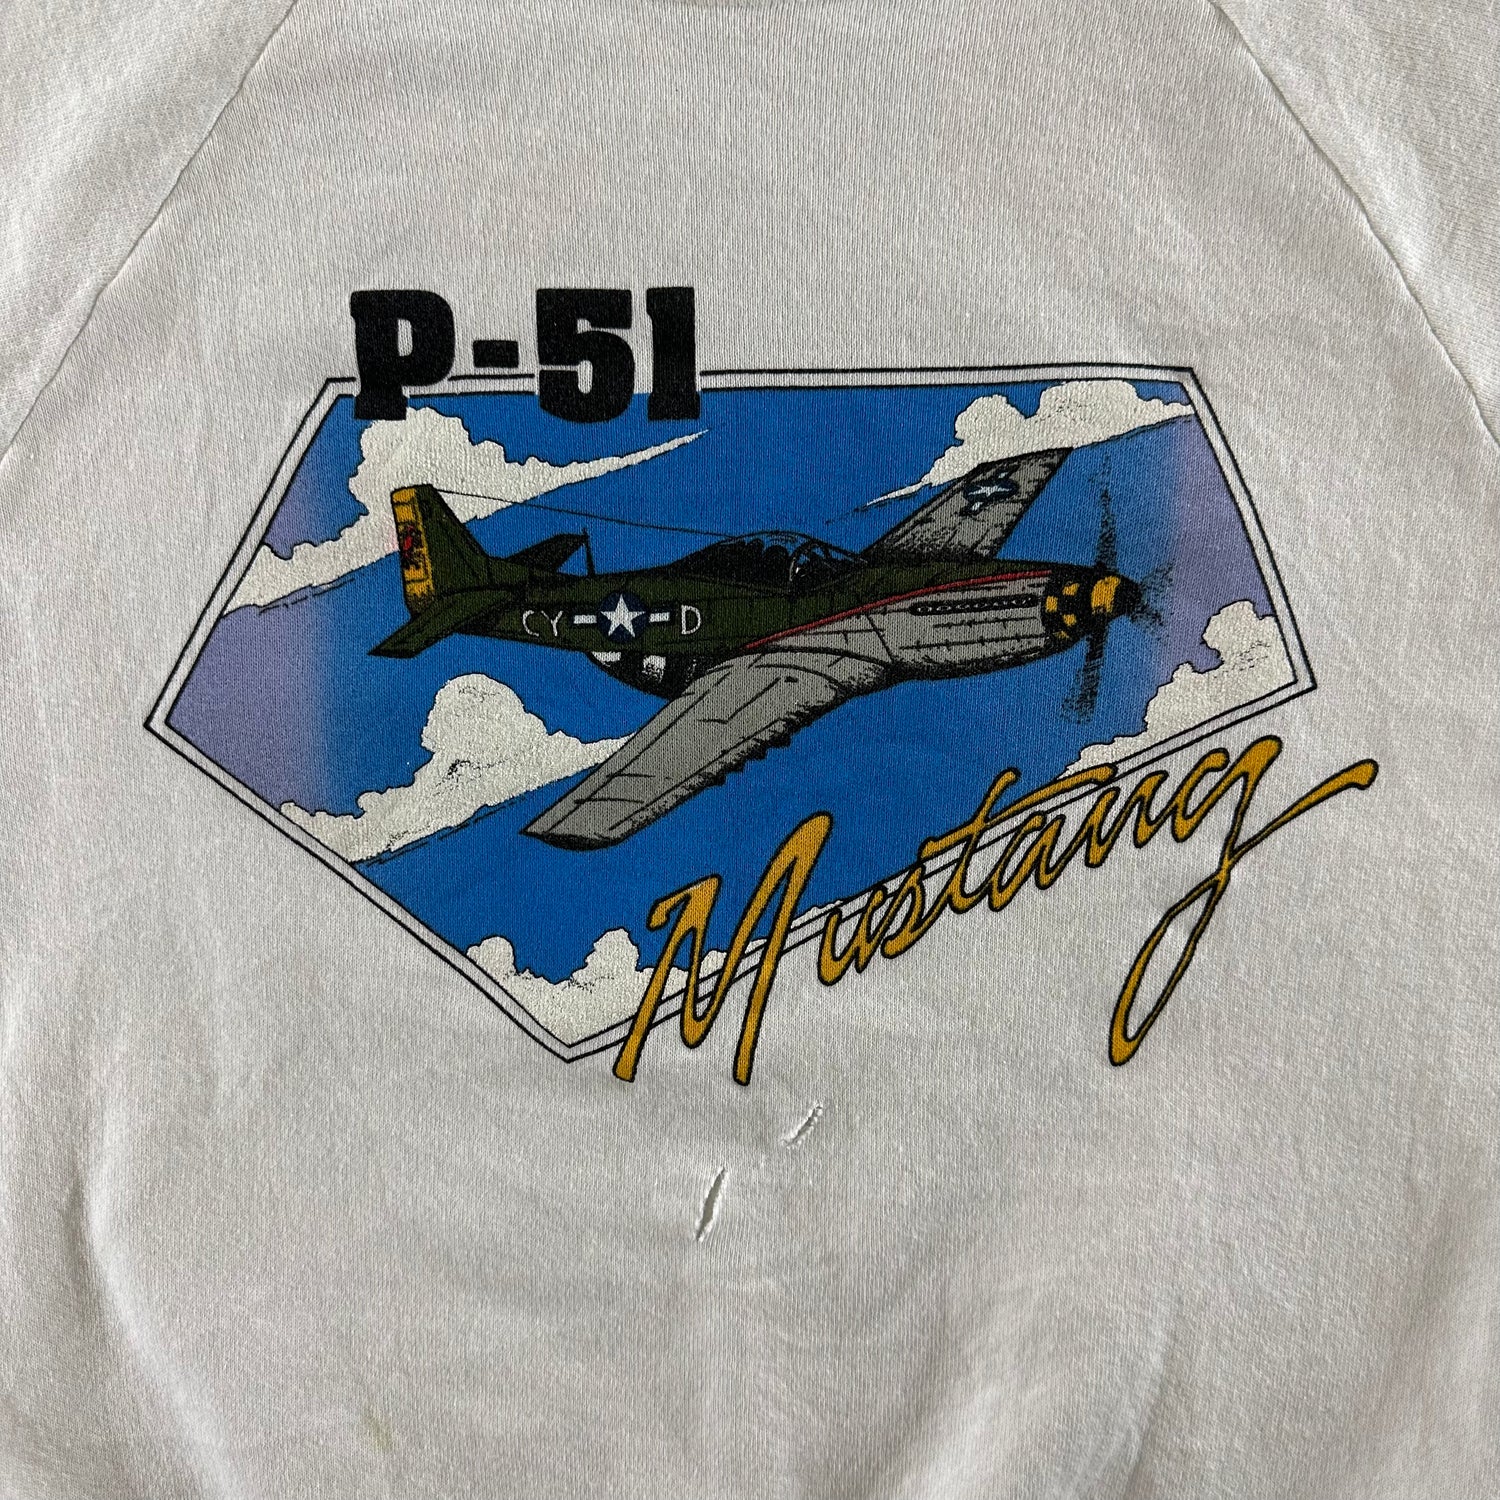 Vintage 1980s P-51 Mustang Sweatshirt size Large